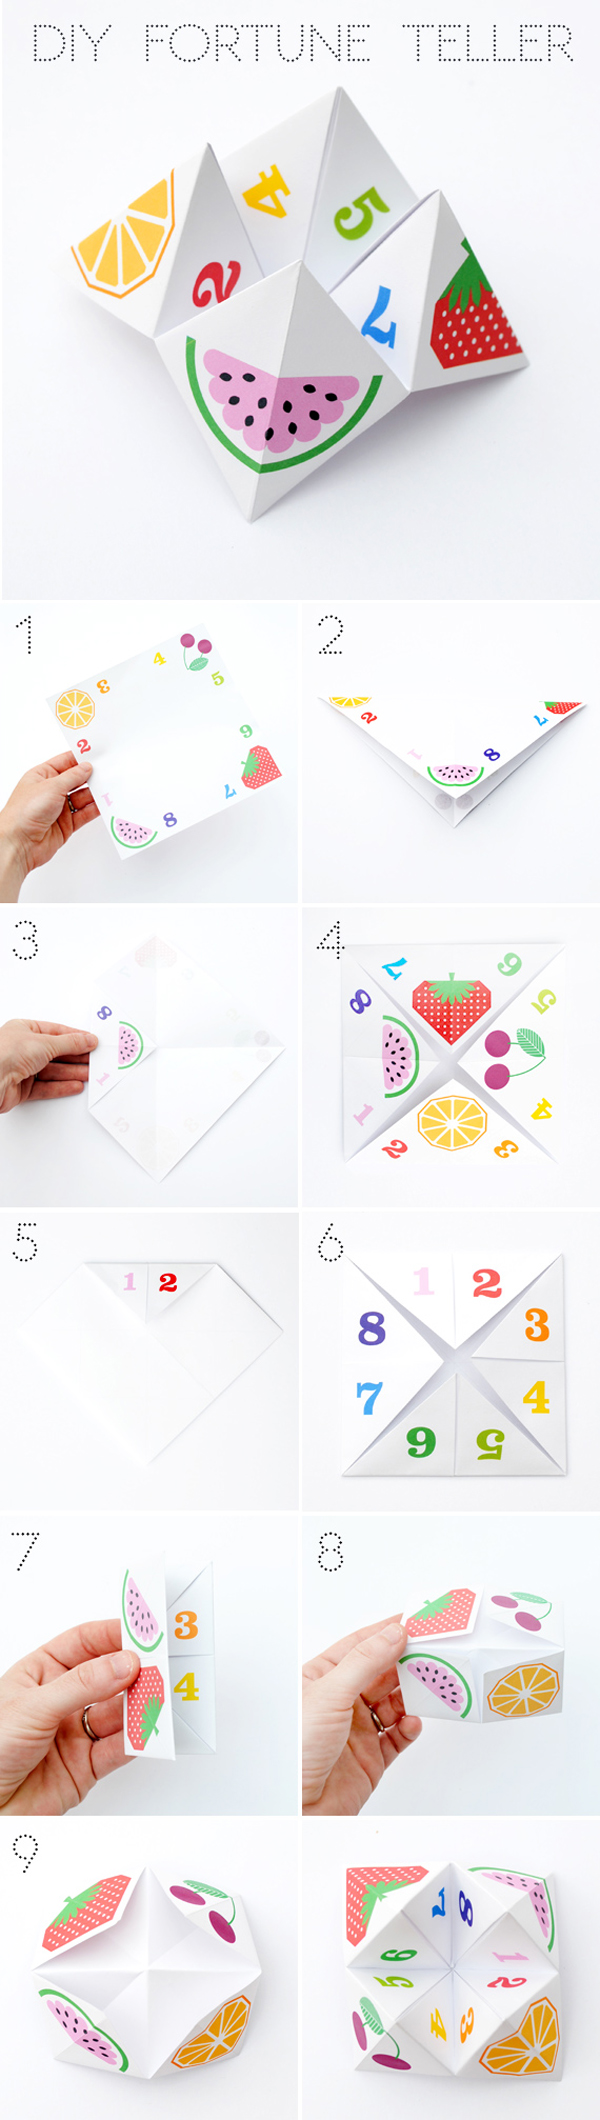 como-hacer-juego-origami